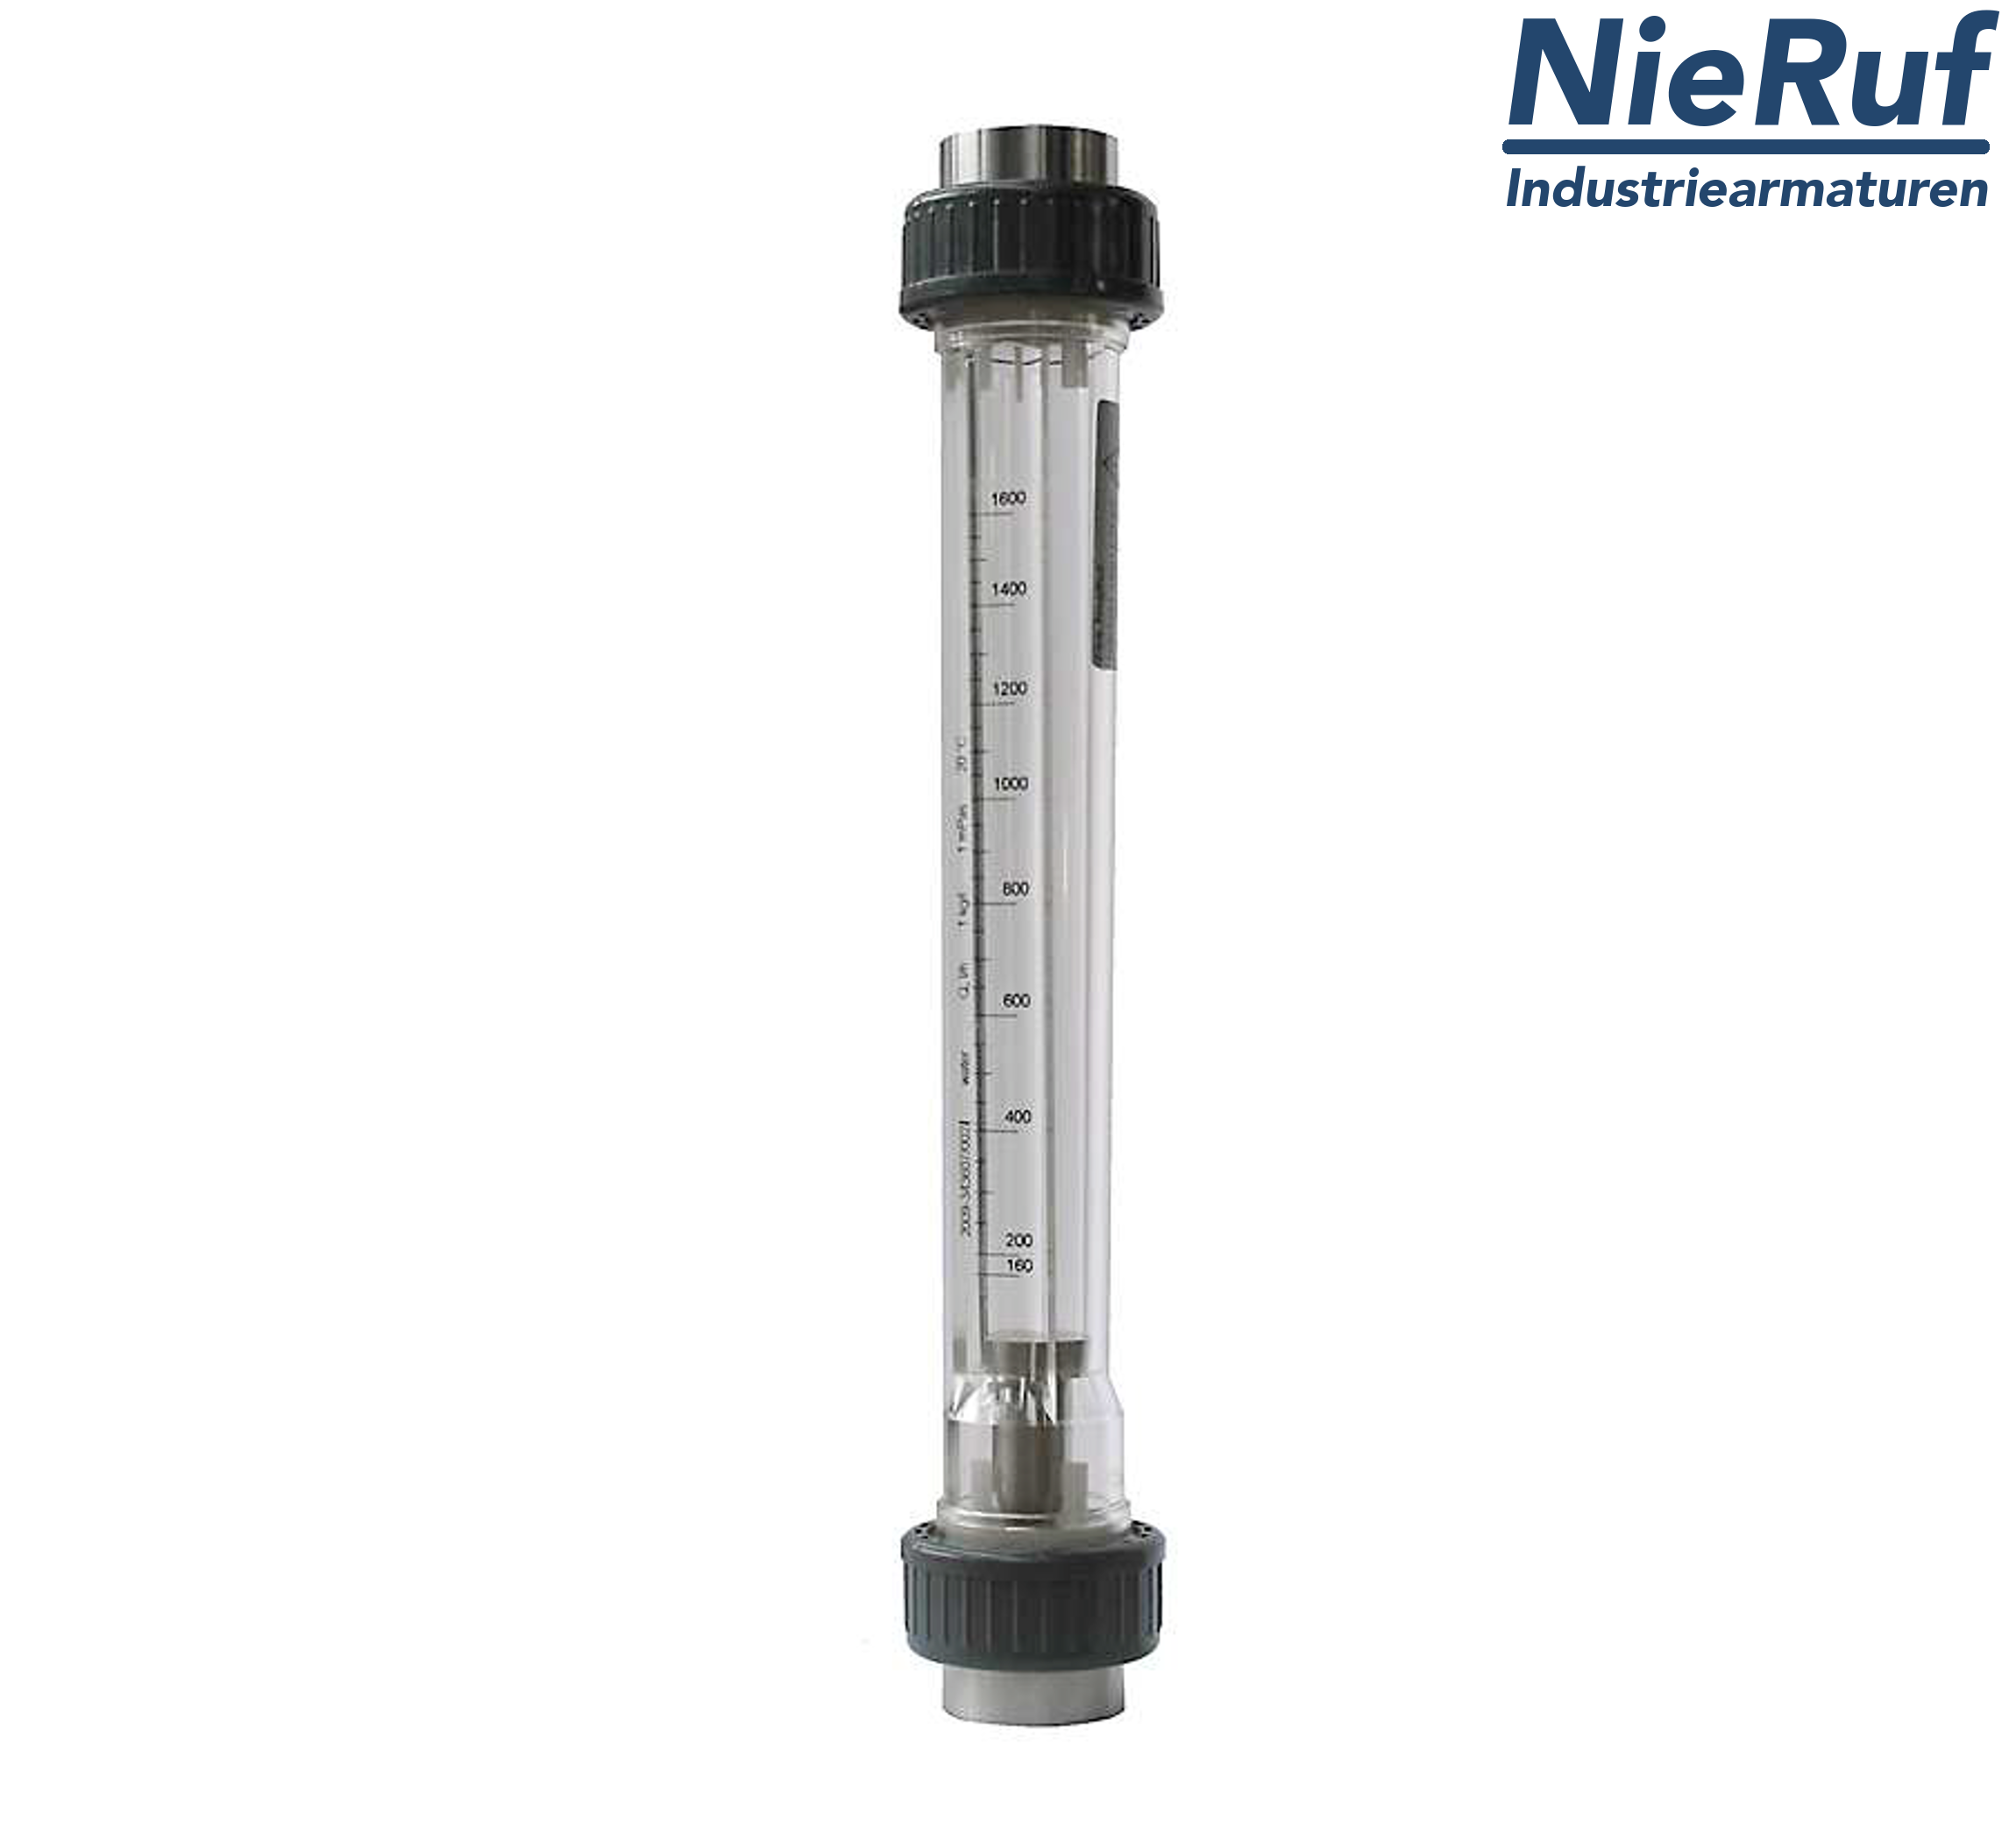 Variable area flowmeter 1 1/2" Inch NPT 143000.0 - 430000 l/h air NBR